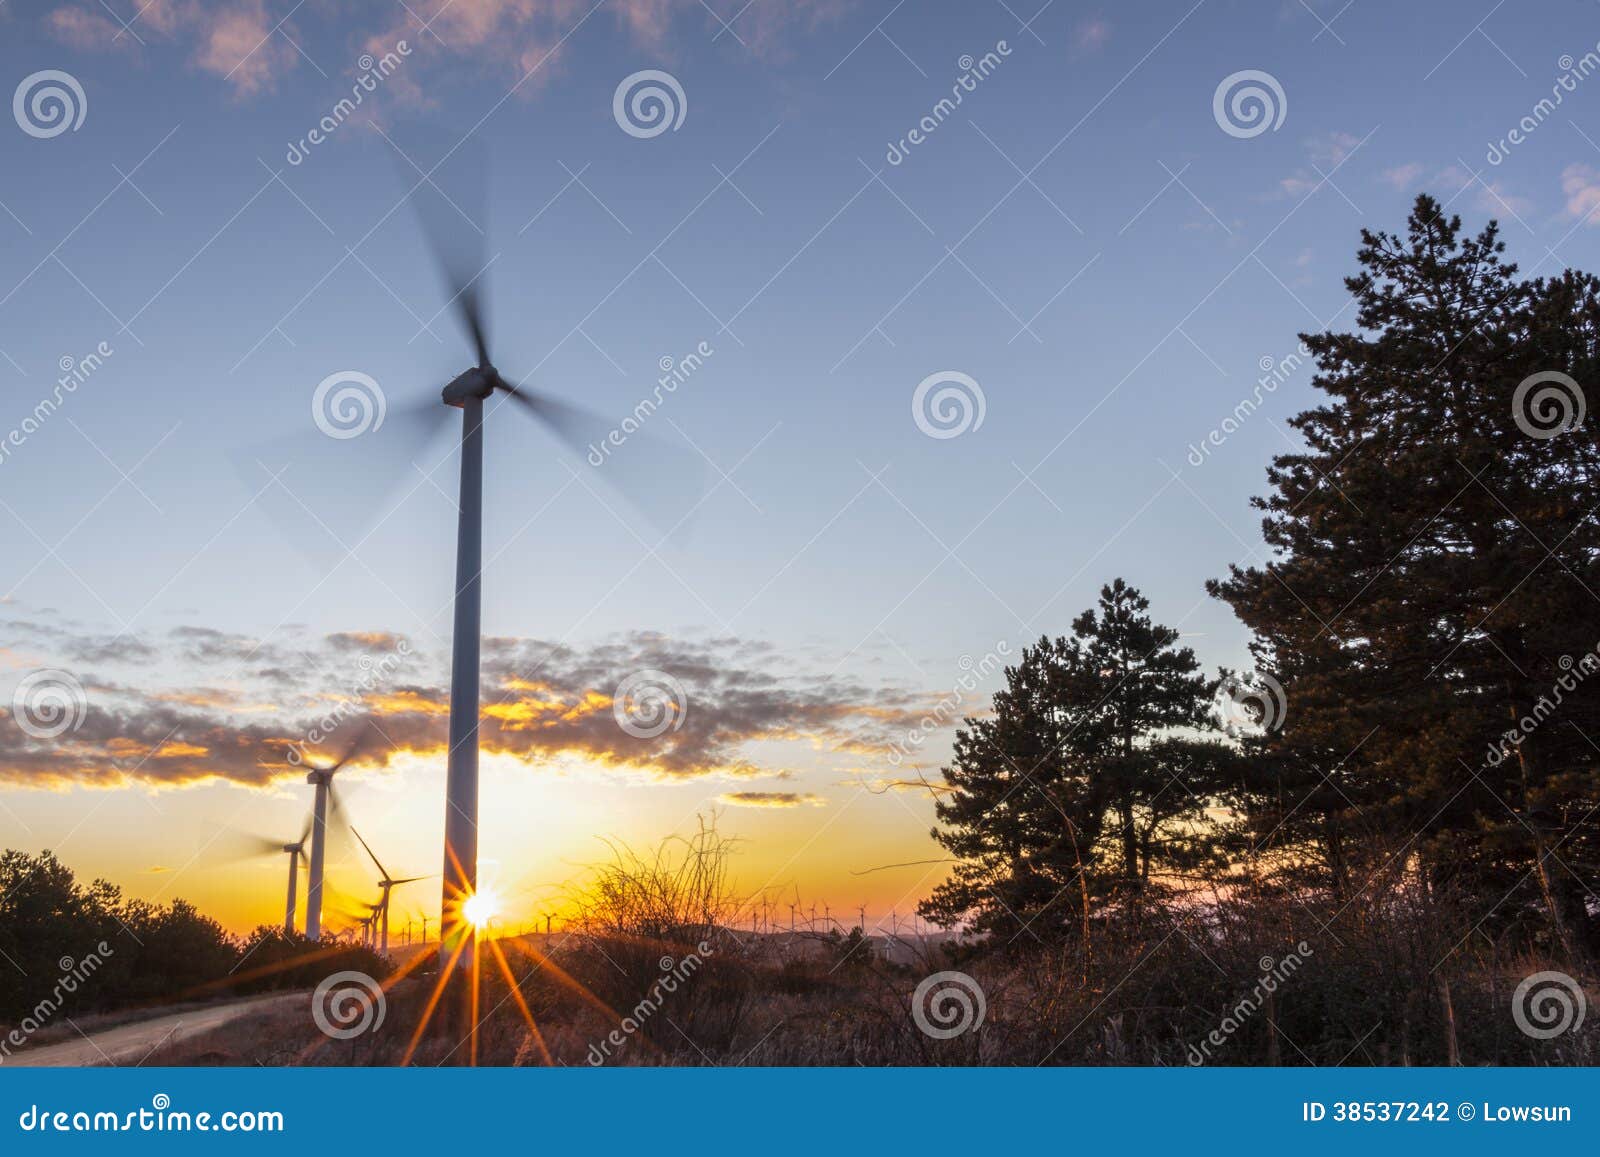 wind turbines at sunrise 1